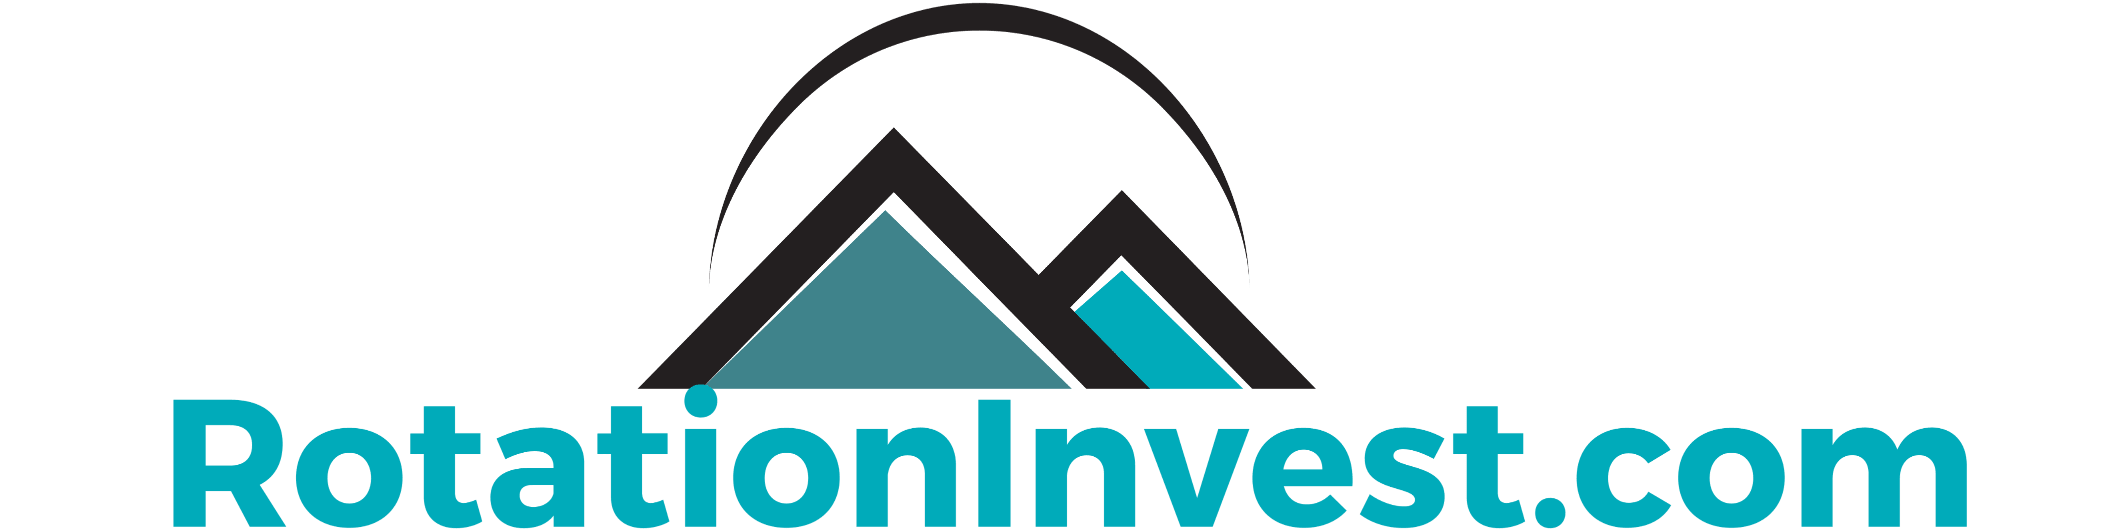 RotationInvest.com Logo